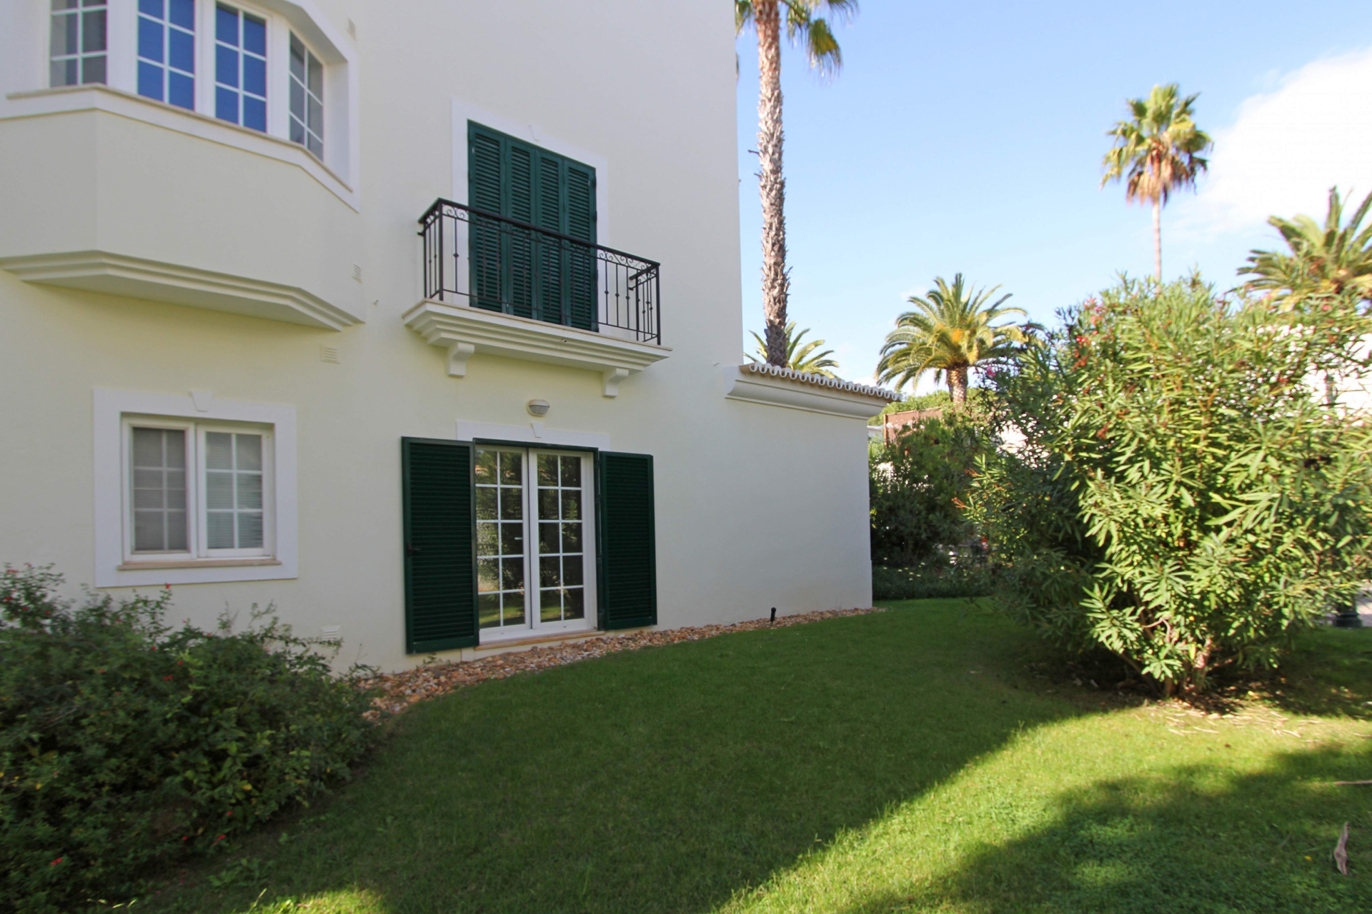 Appartement zu verkaufen, Strandnähe, Vale do Lobo, Algarve, Portugal_120393